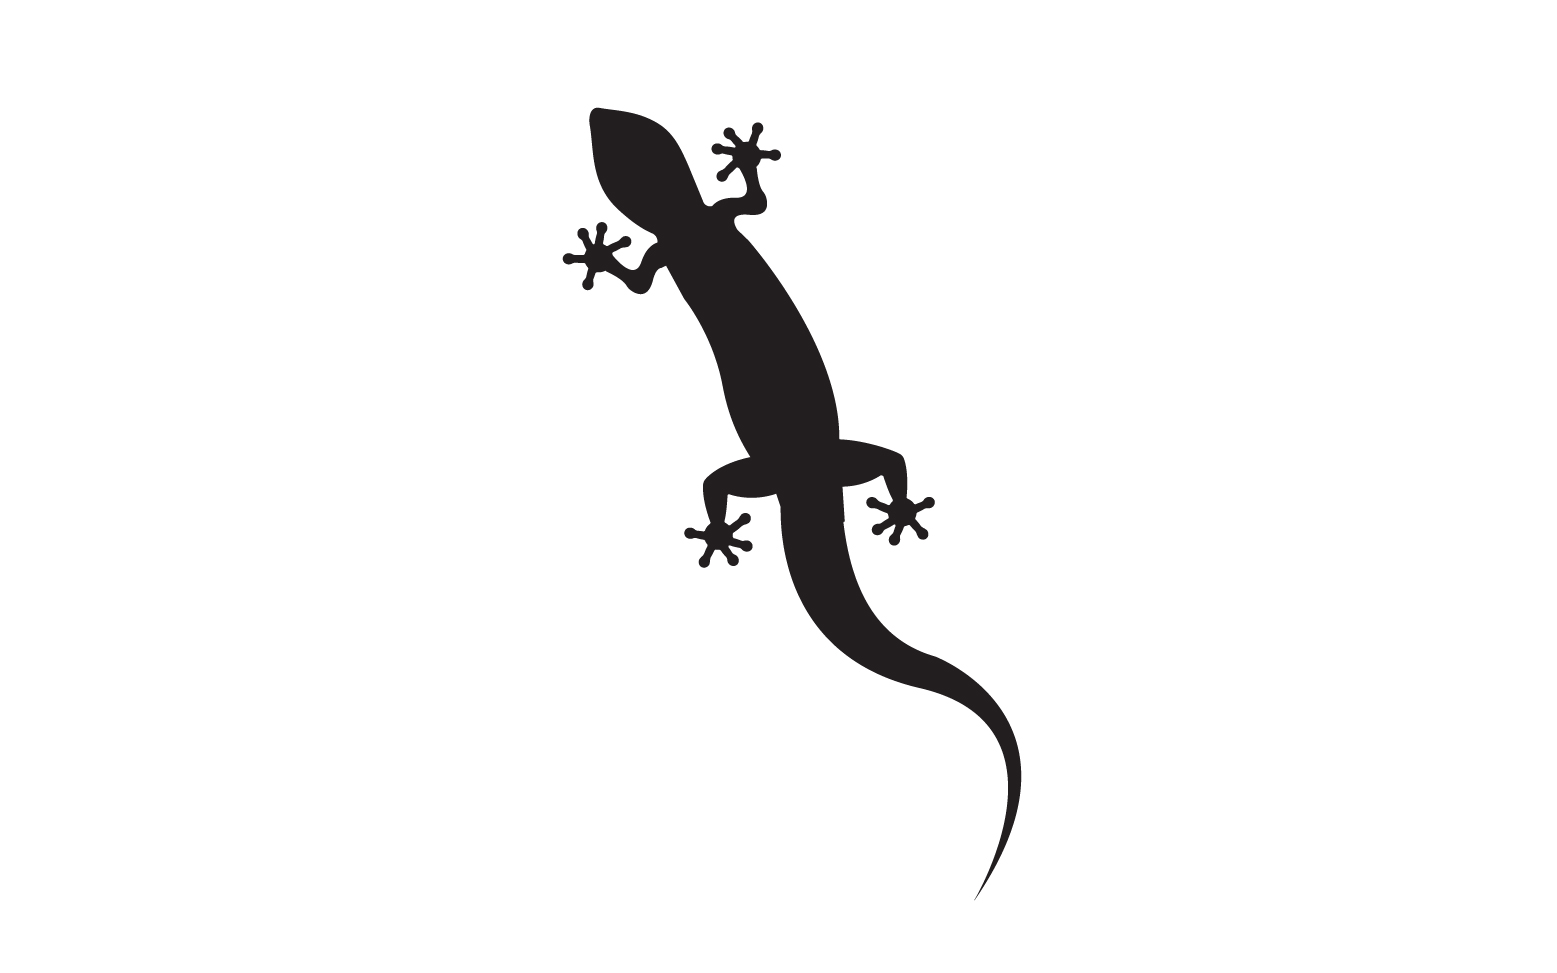 Lizard chameleon home lizard logo v16